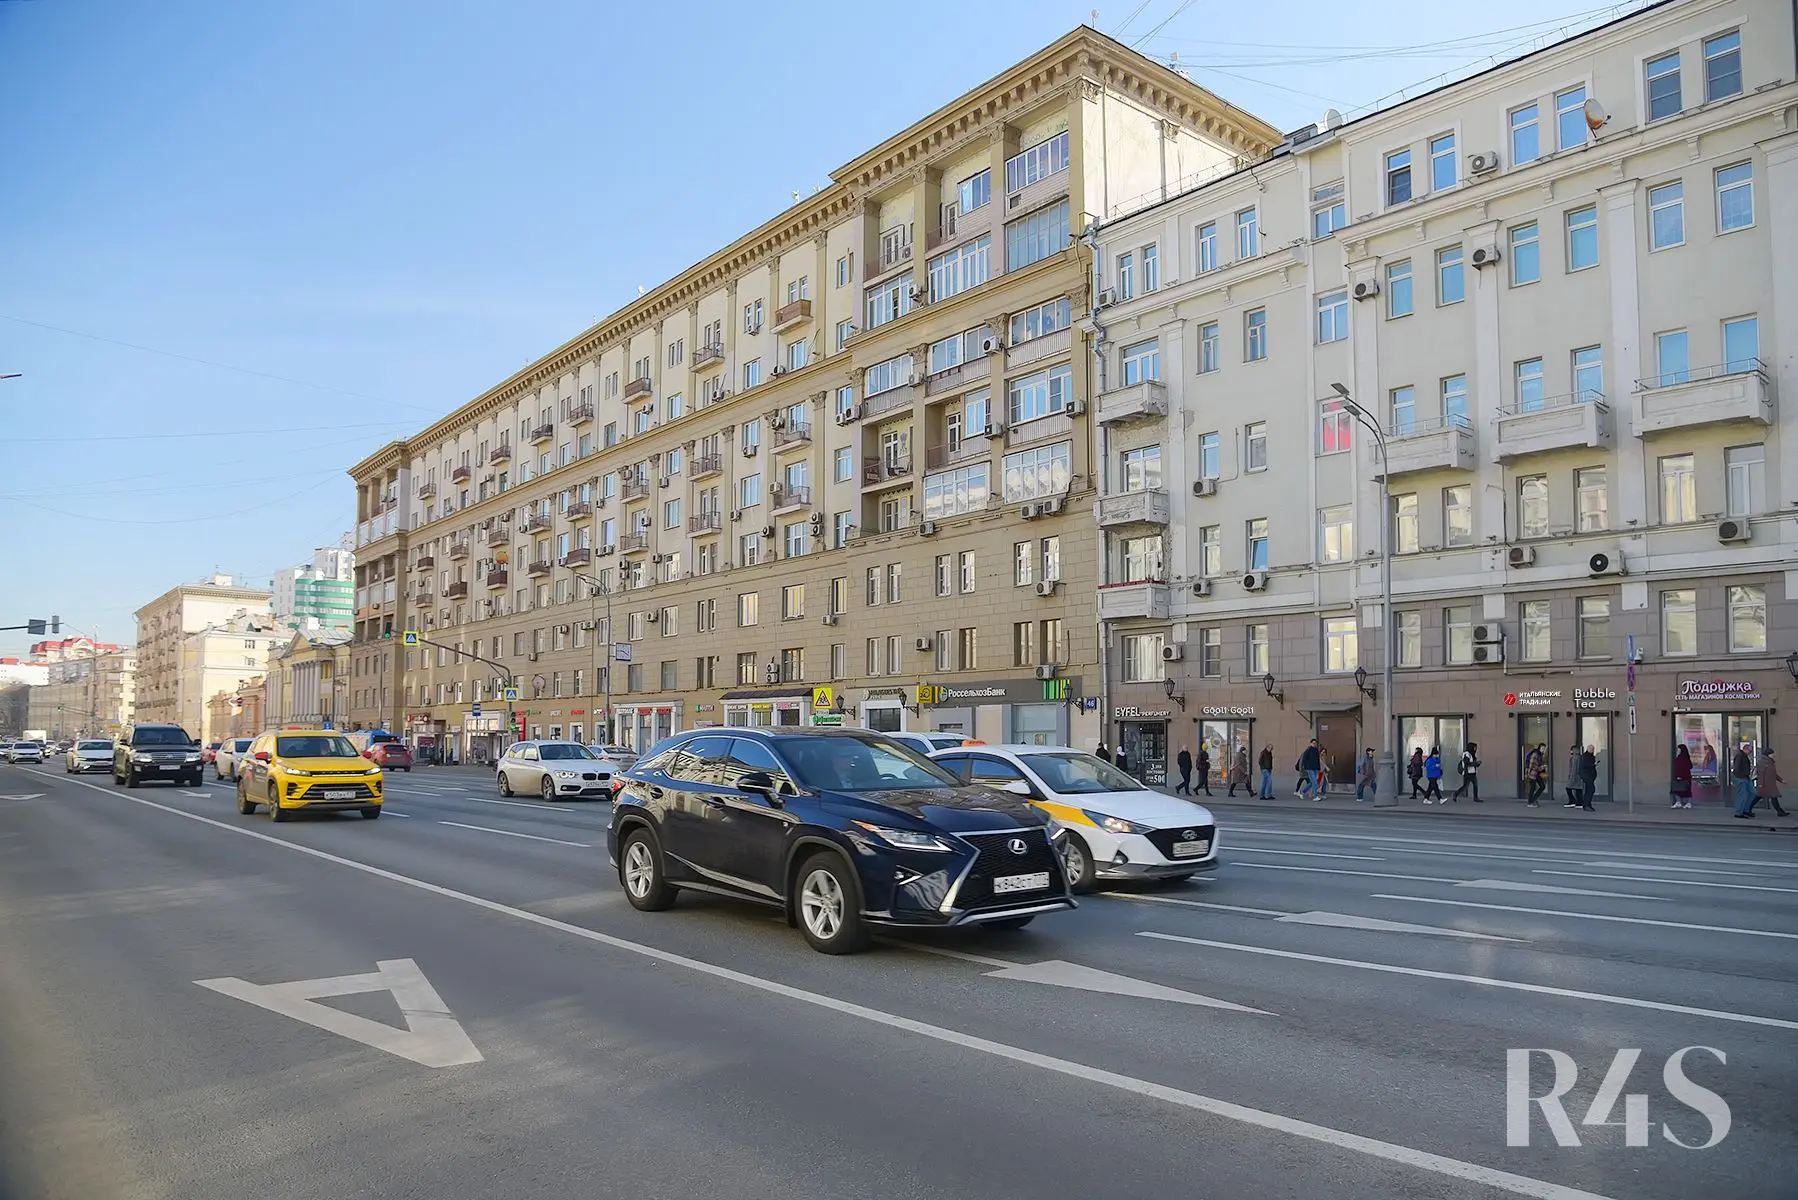 Продажа торговых помещений площадью 14 - 89.4 м2 в Москве:  проспект Мира, 44 R4S | Realty4Sale